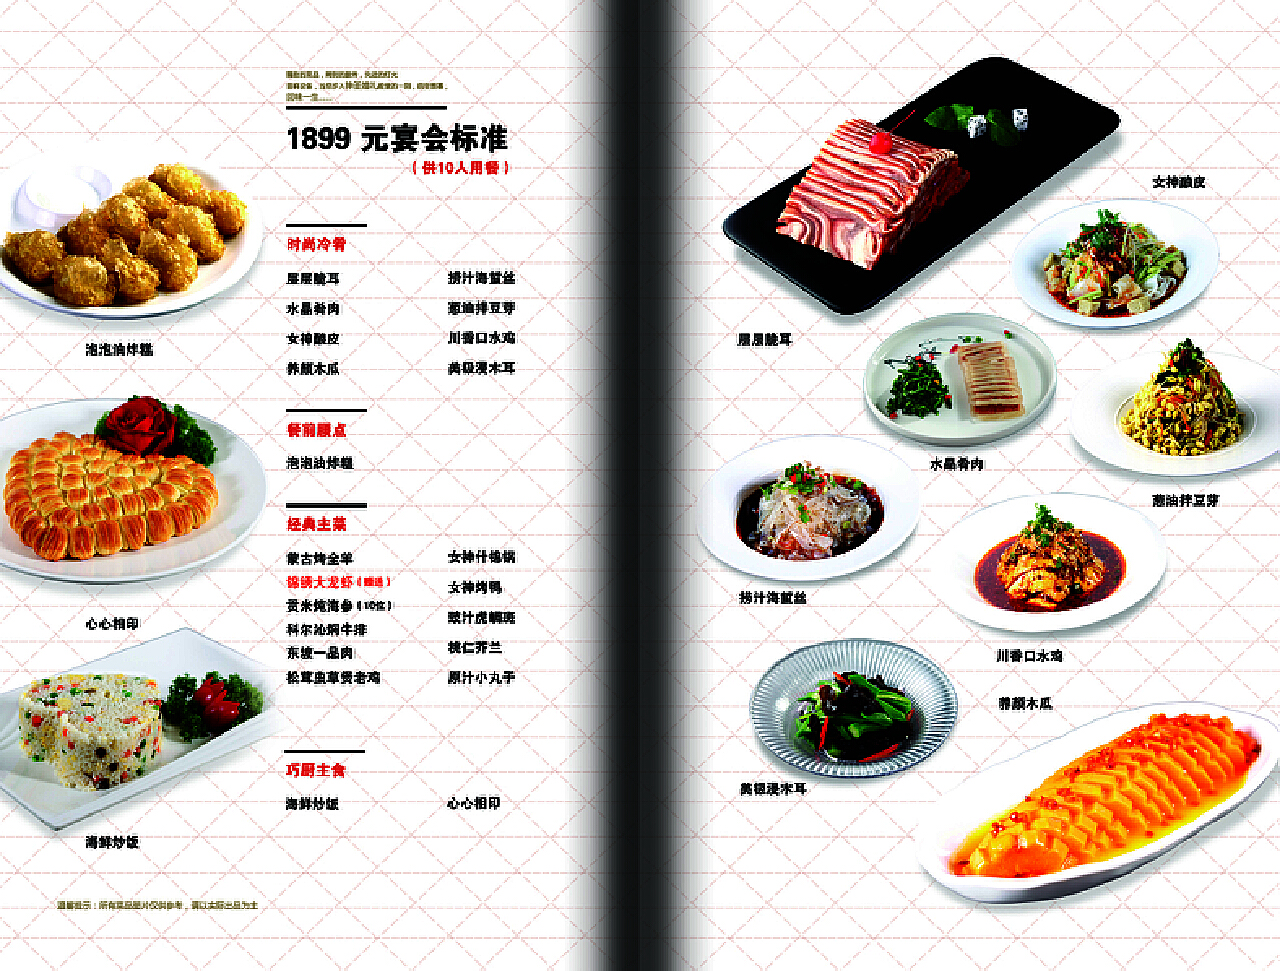 宴会菜单设计模板欣赏,设计宴会菜单的一般原则-捷达菜谱设计制作公司